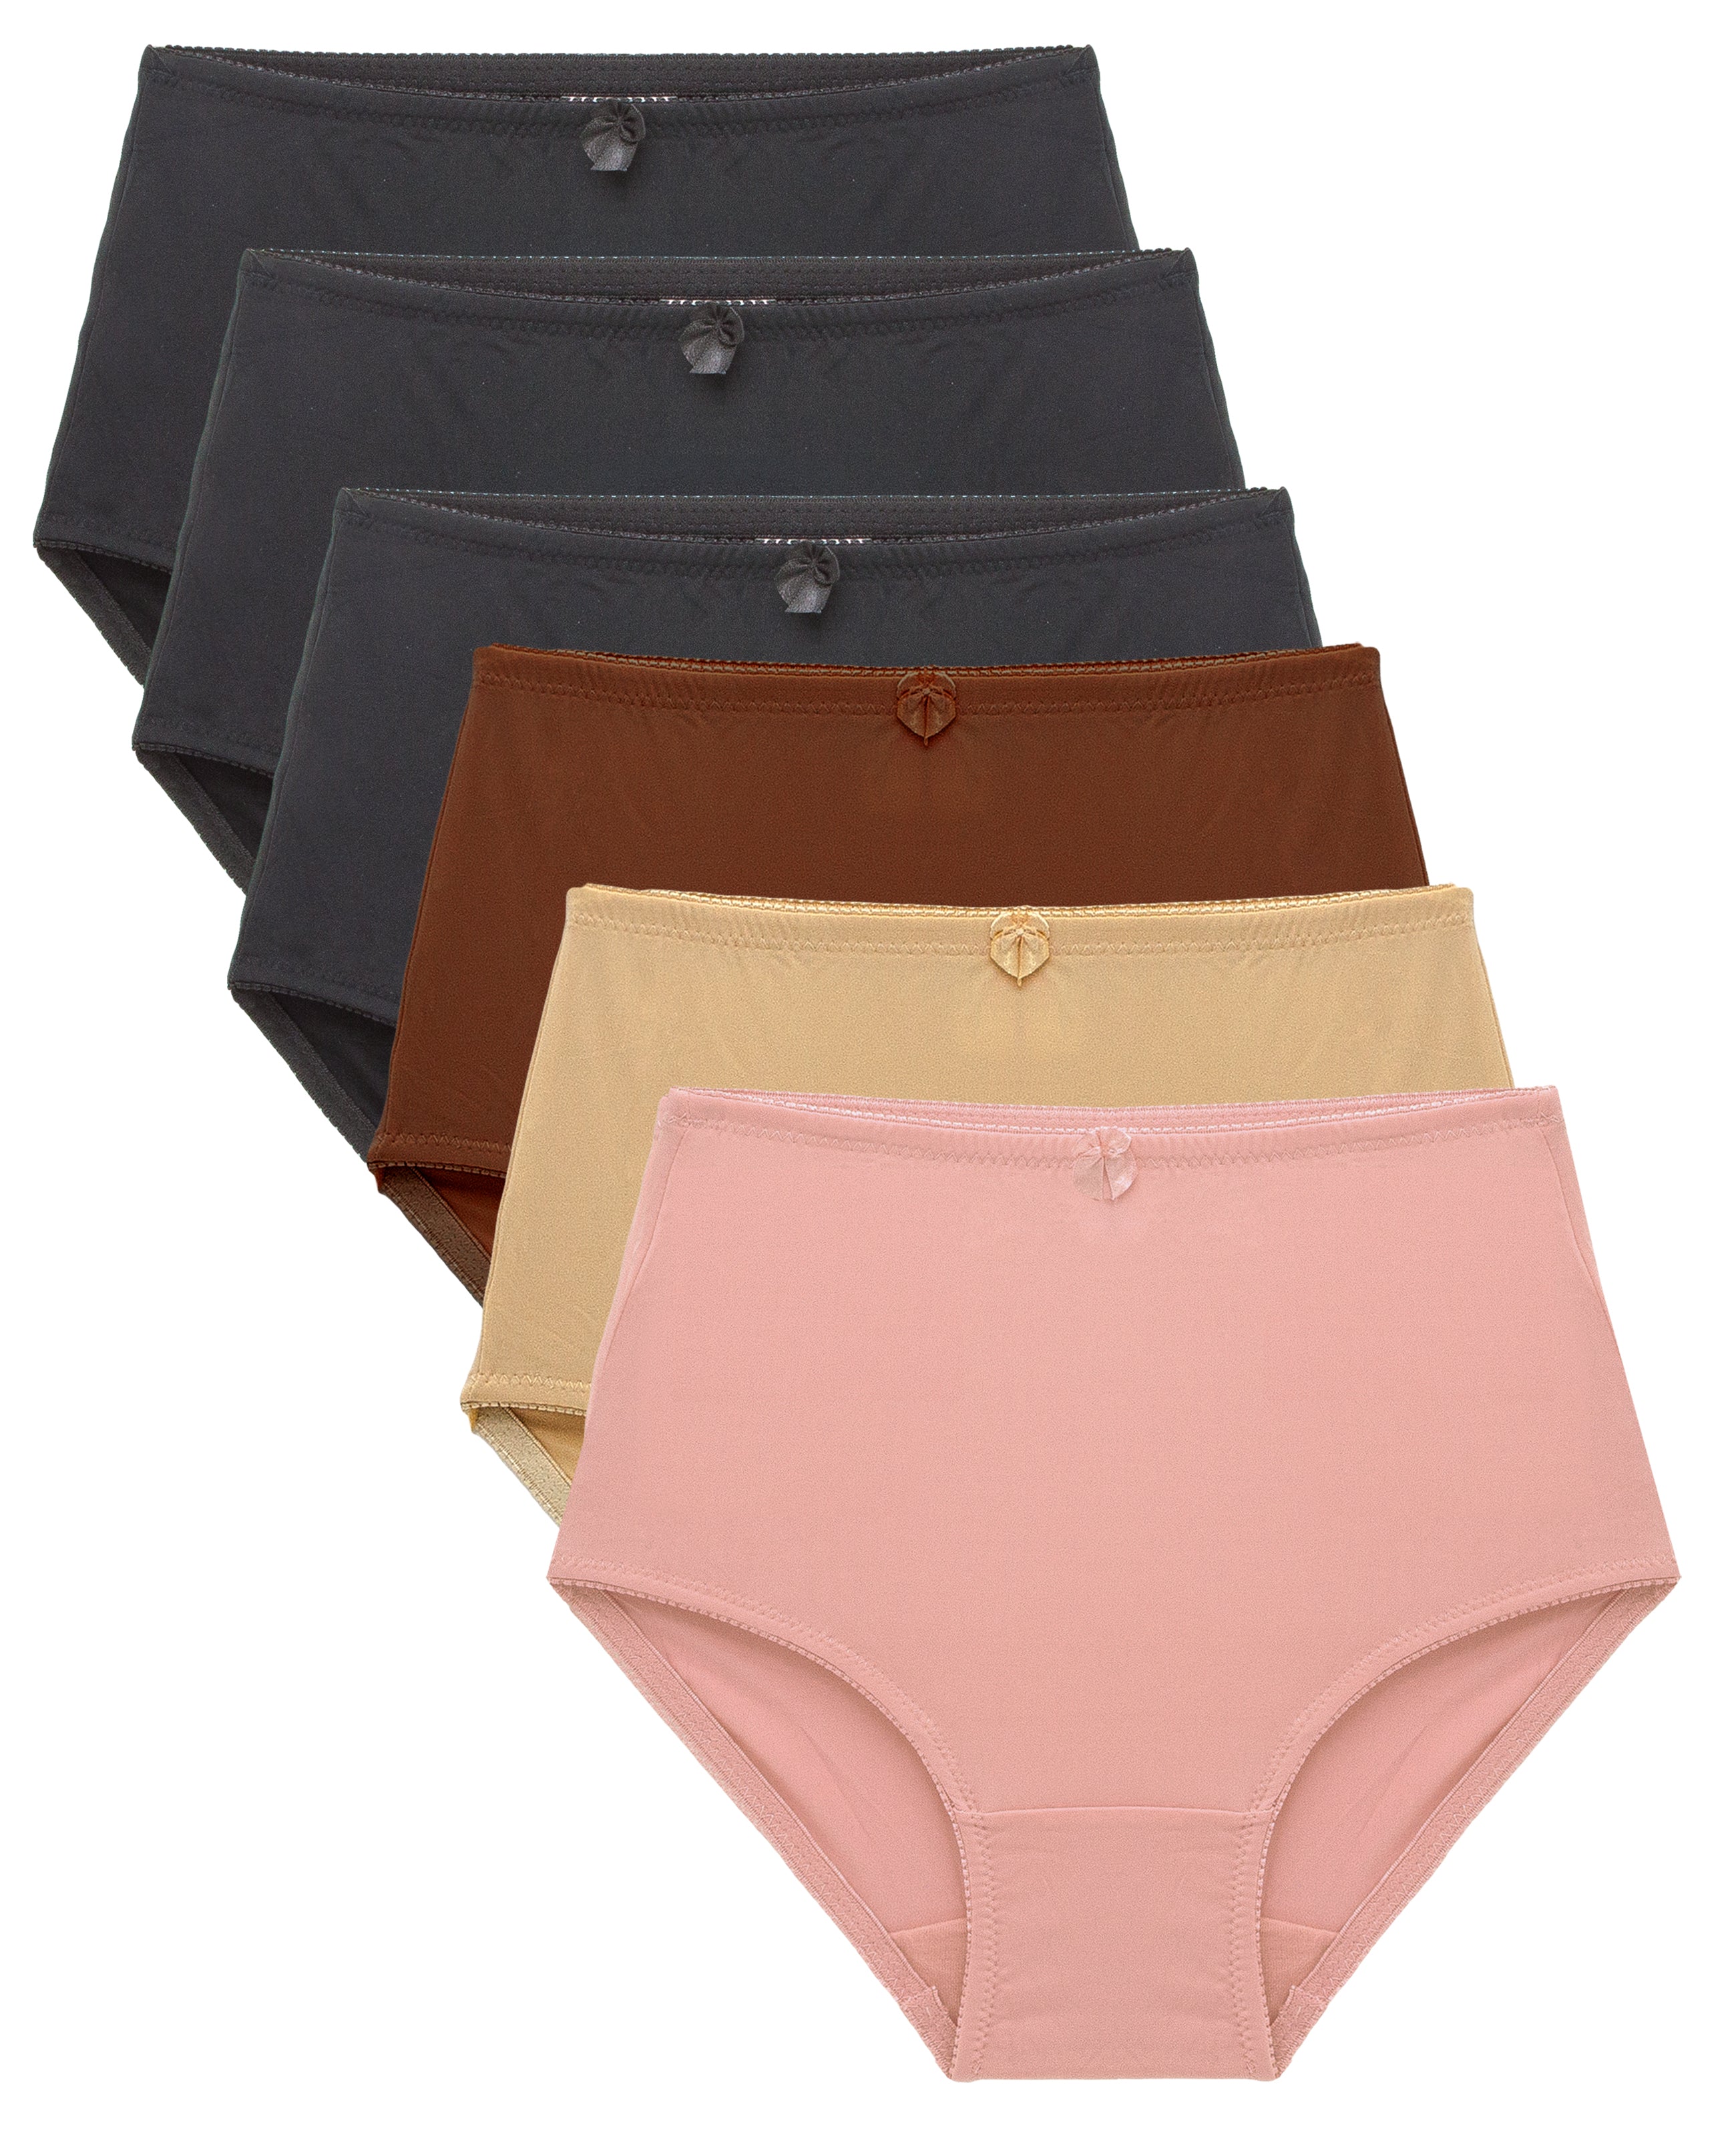 WITTYL Comfort Bras for Women Ultrathin Underwear Bras Embroidered